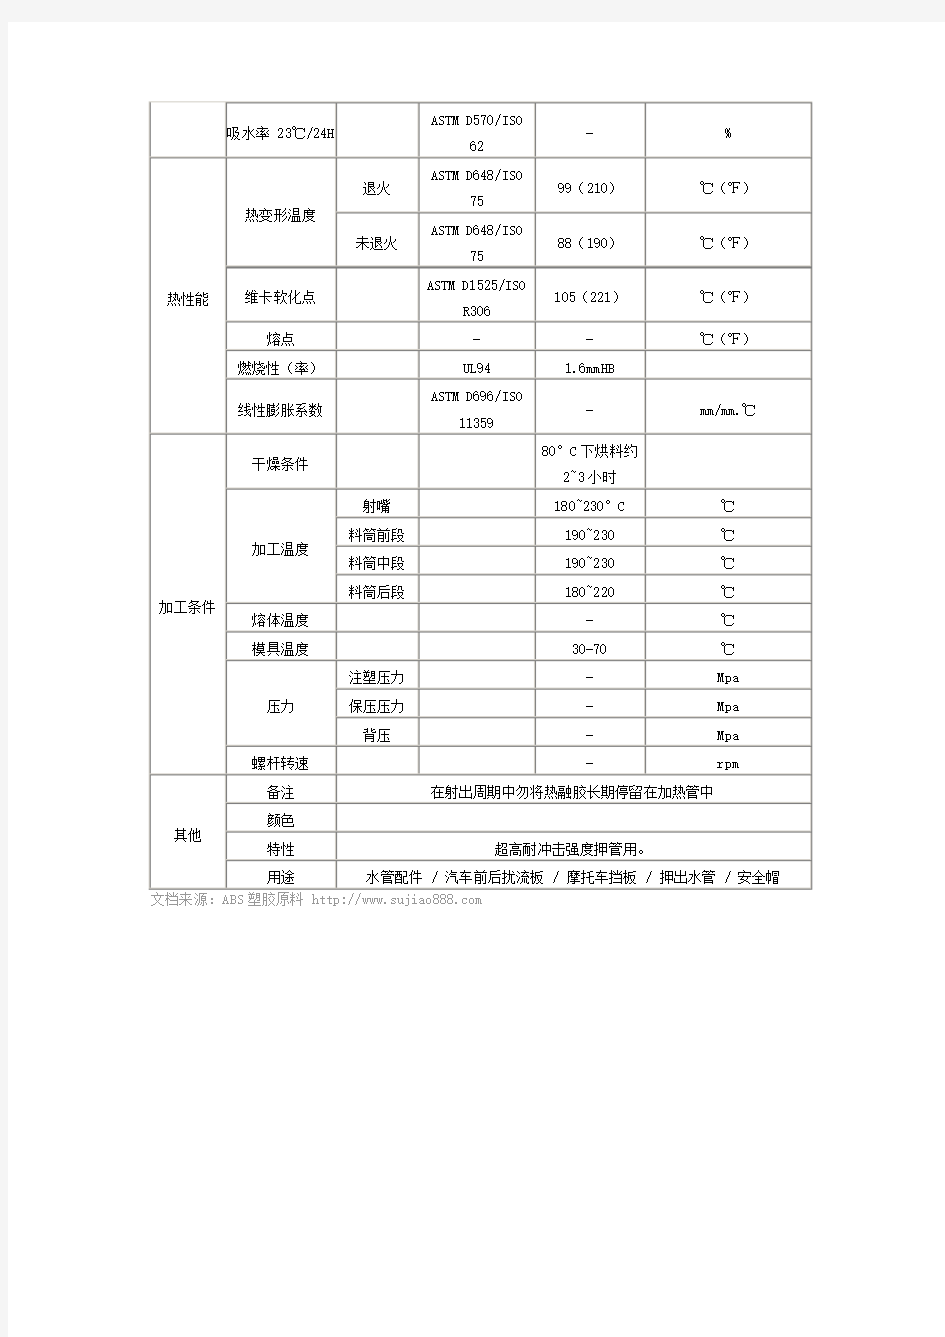 台湾奇美ABS PA-709 物性数据表